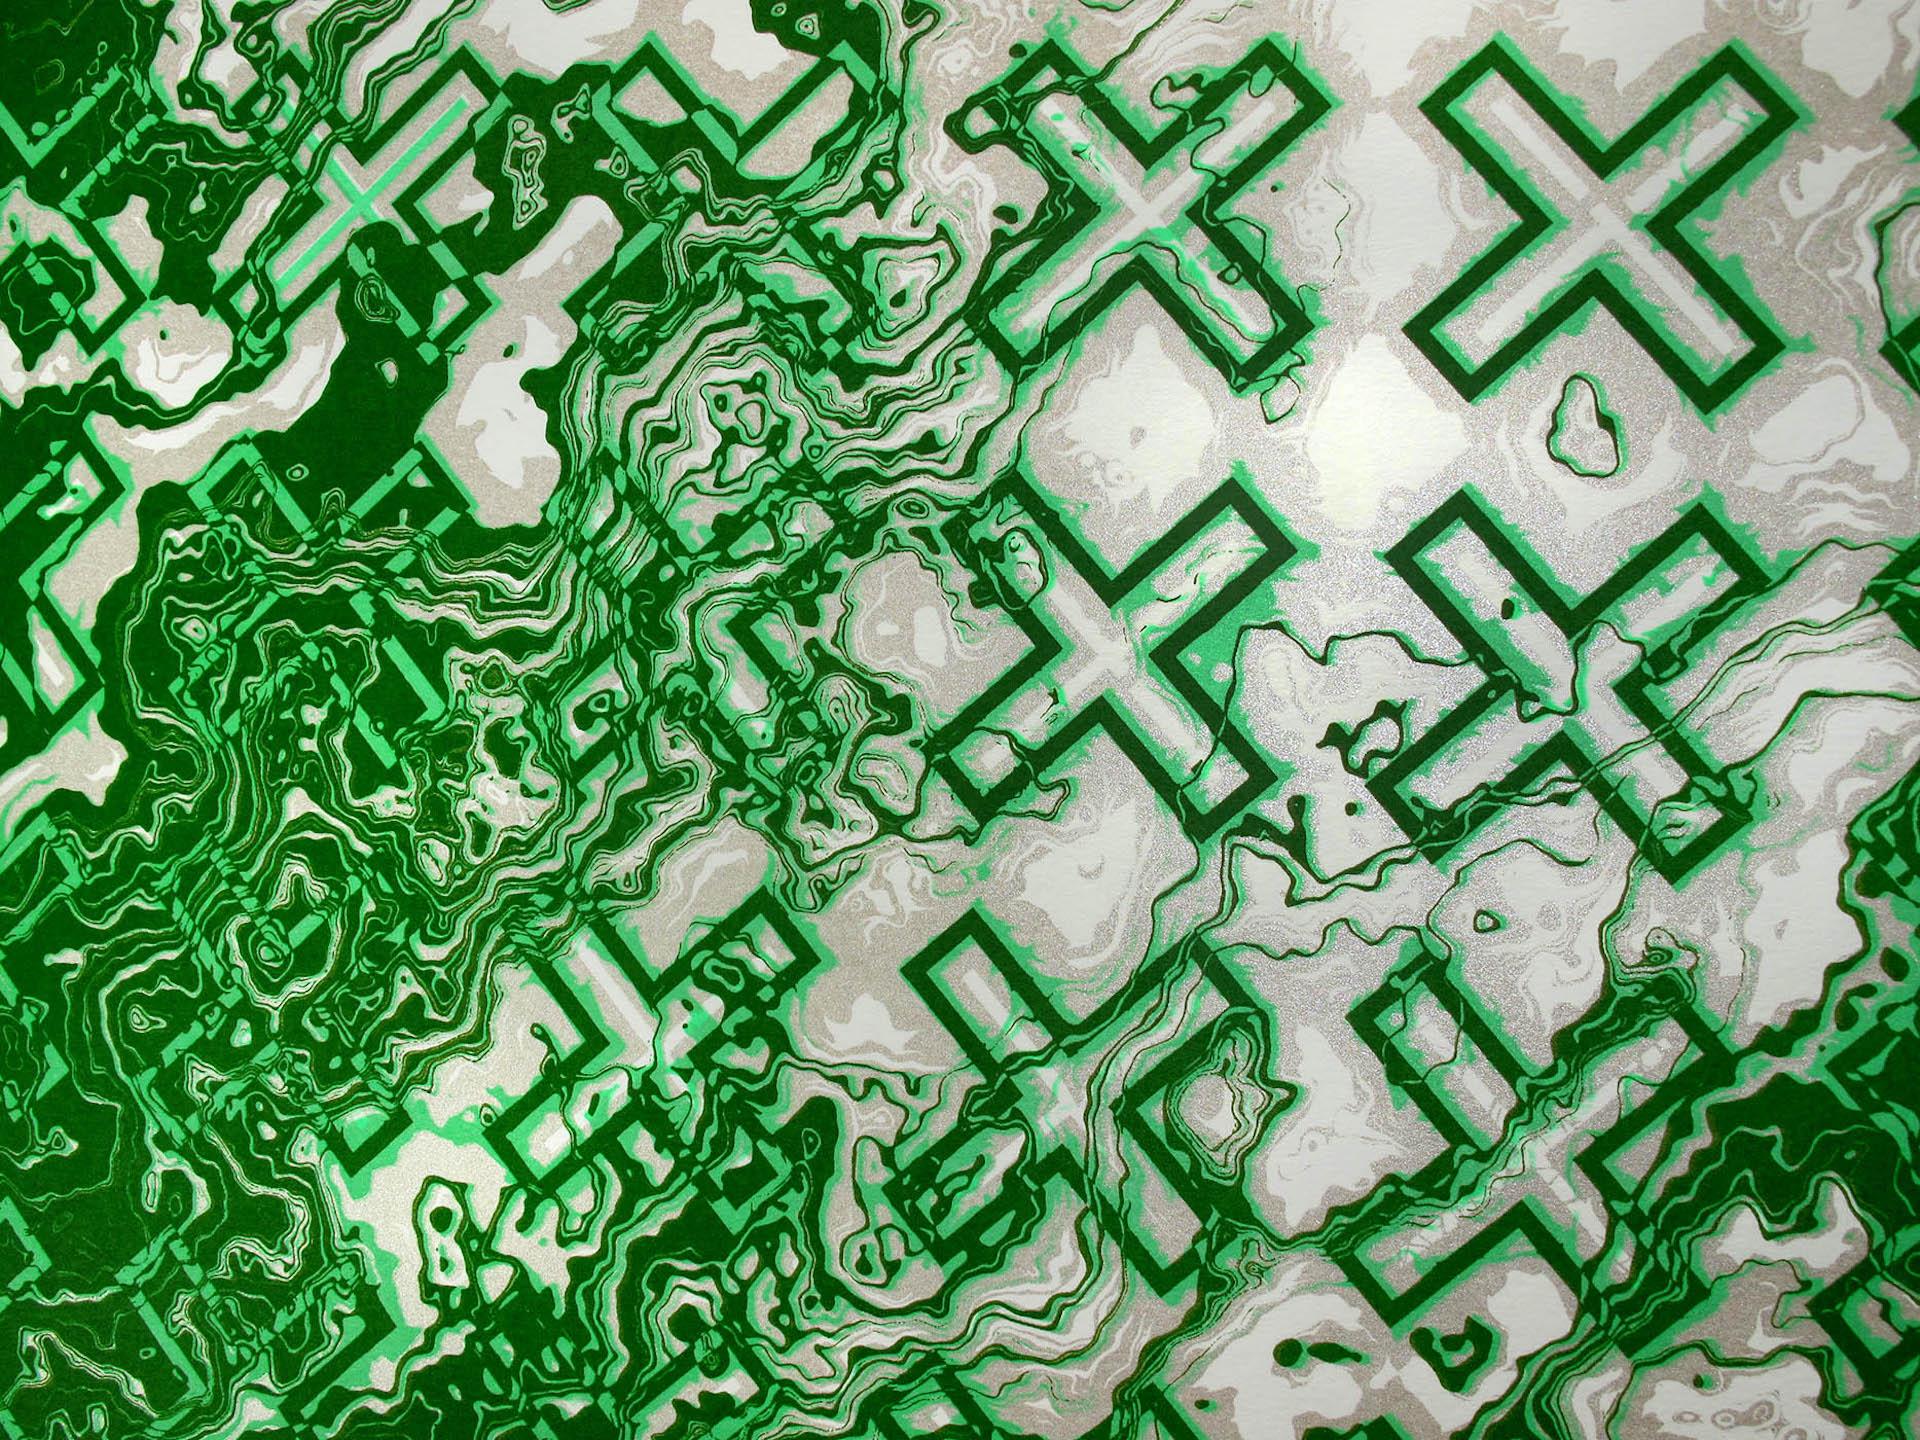 Chris Keegan, Green Flow, Limited Edition Silkscreen Print, Abstract Art 1